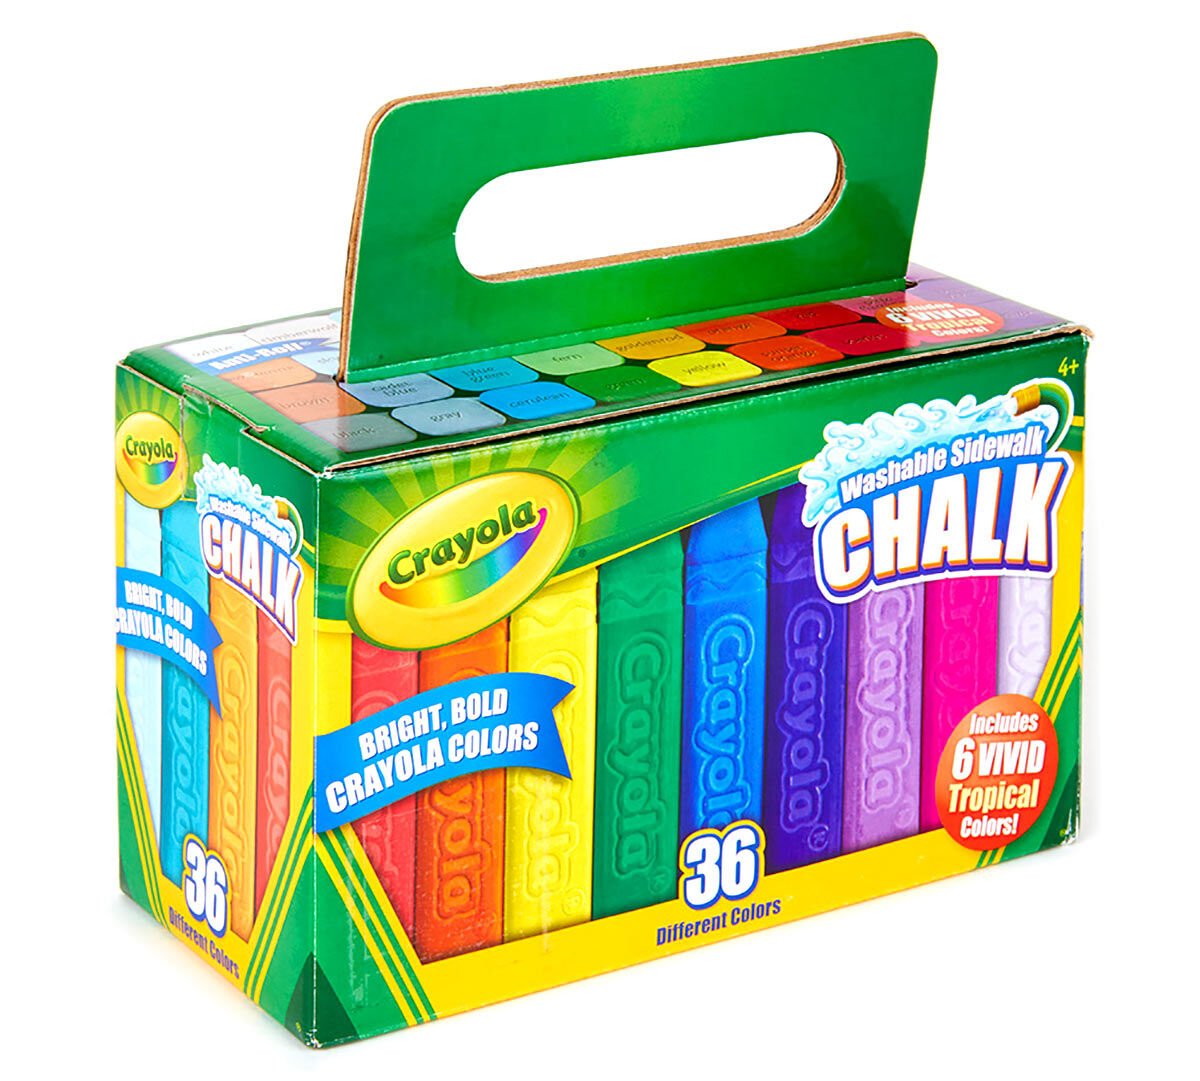 Download Sidewalk Chalk 36 ct. | Crayola